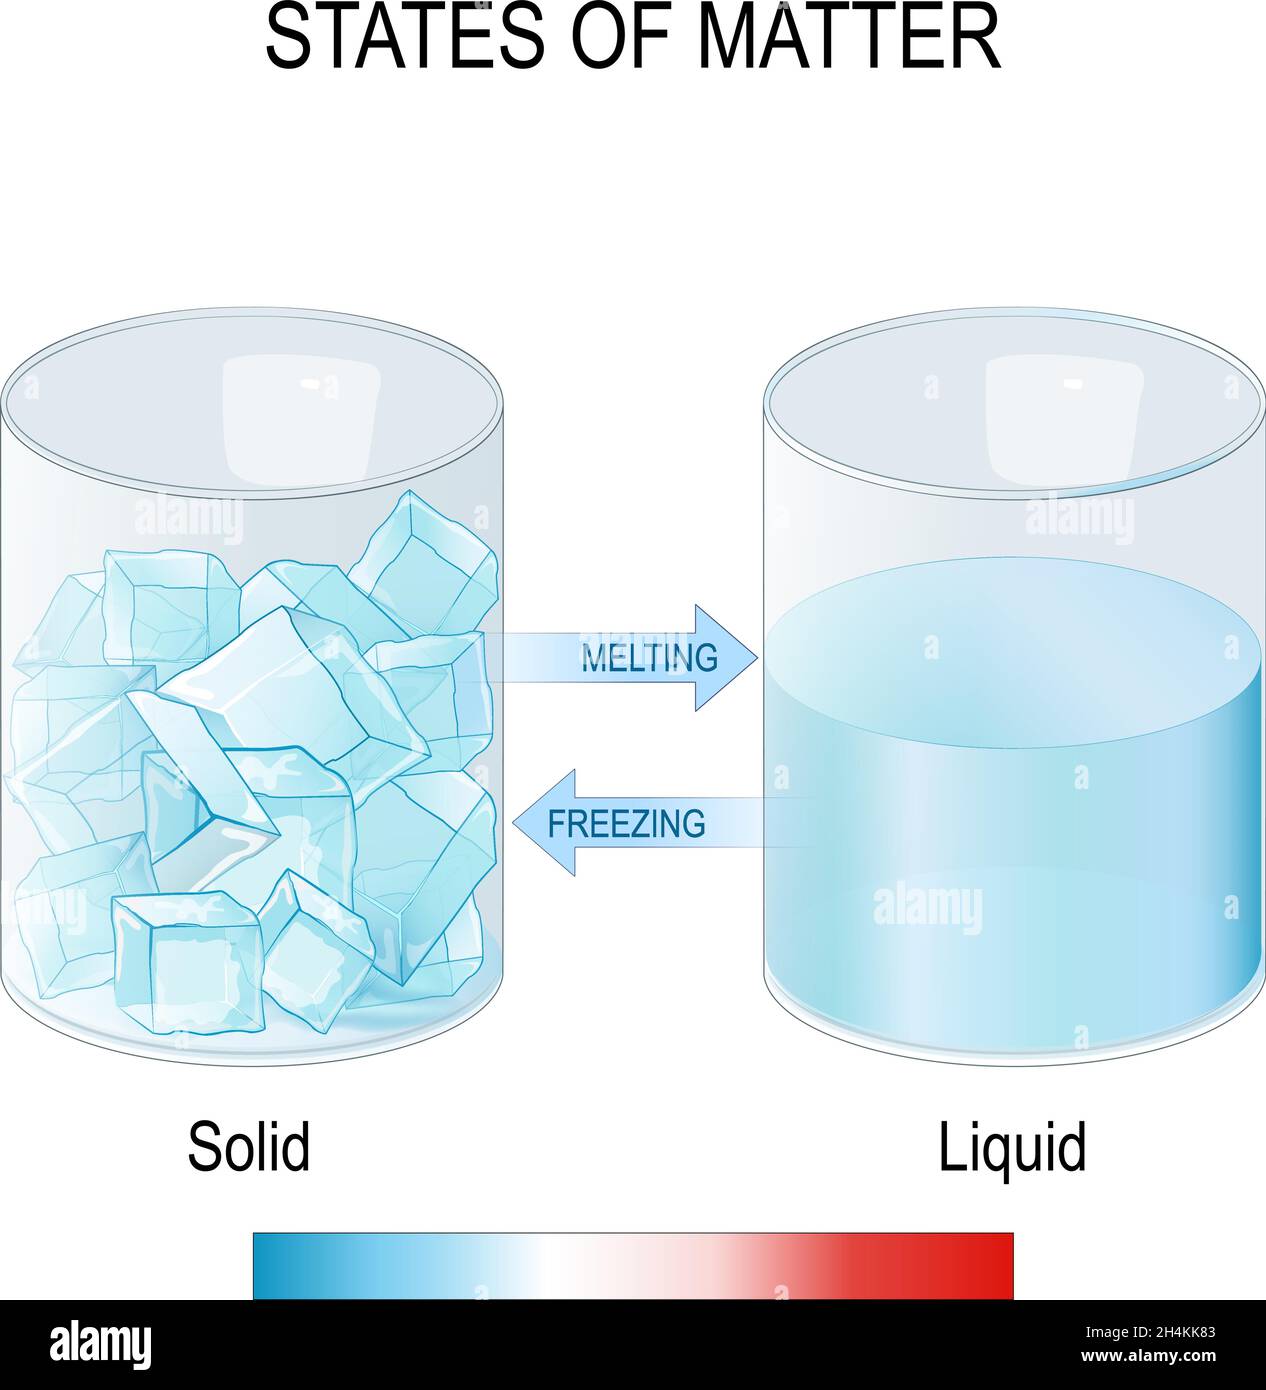 états de matière.Deux verres avec glaçons et eau. Congélation et fusion. Liquide et solide. Expérience scientifique. Étude de la physique ou de la chimie. Illustration de Vecteur